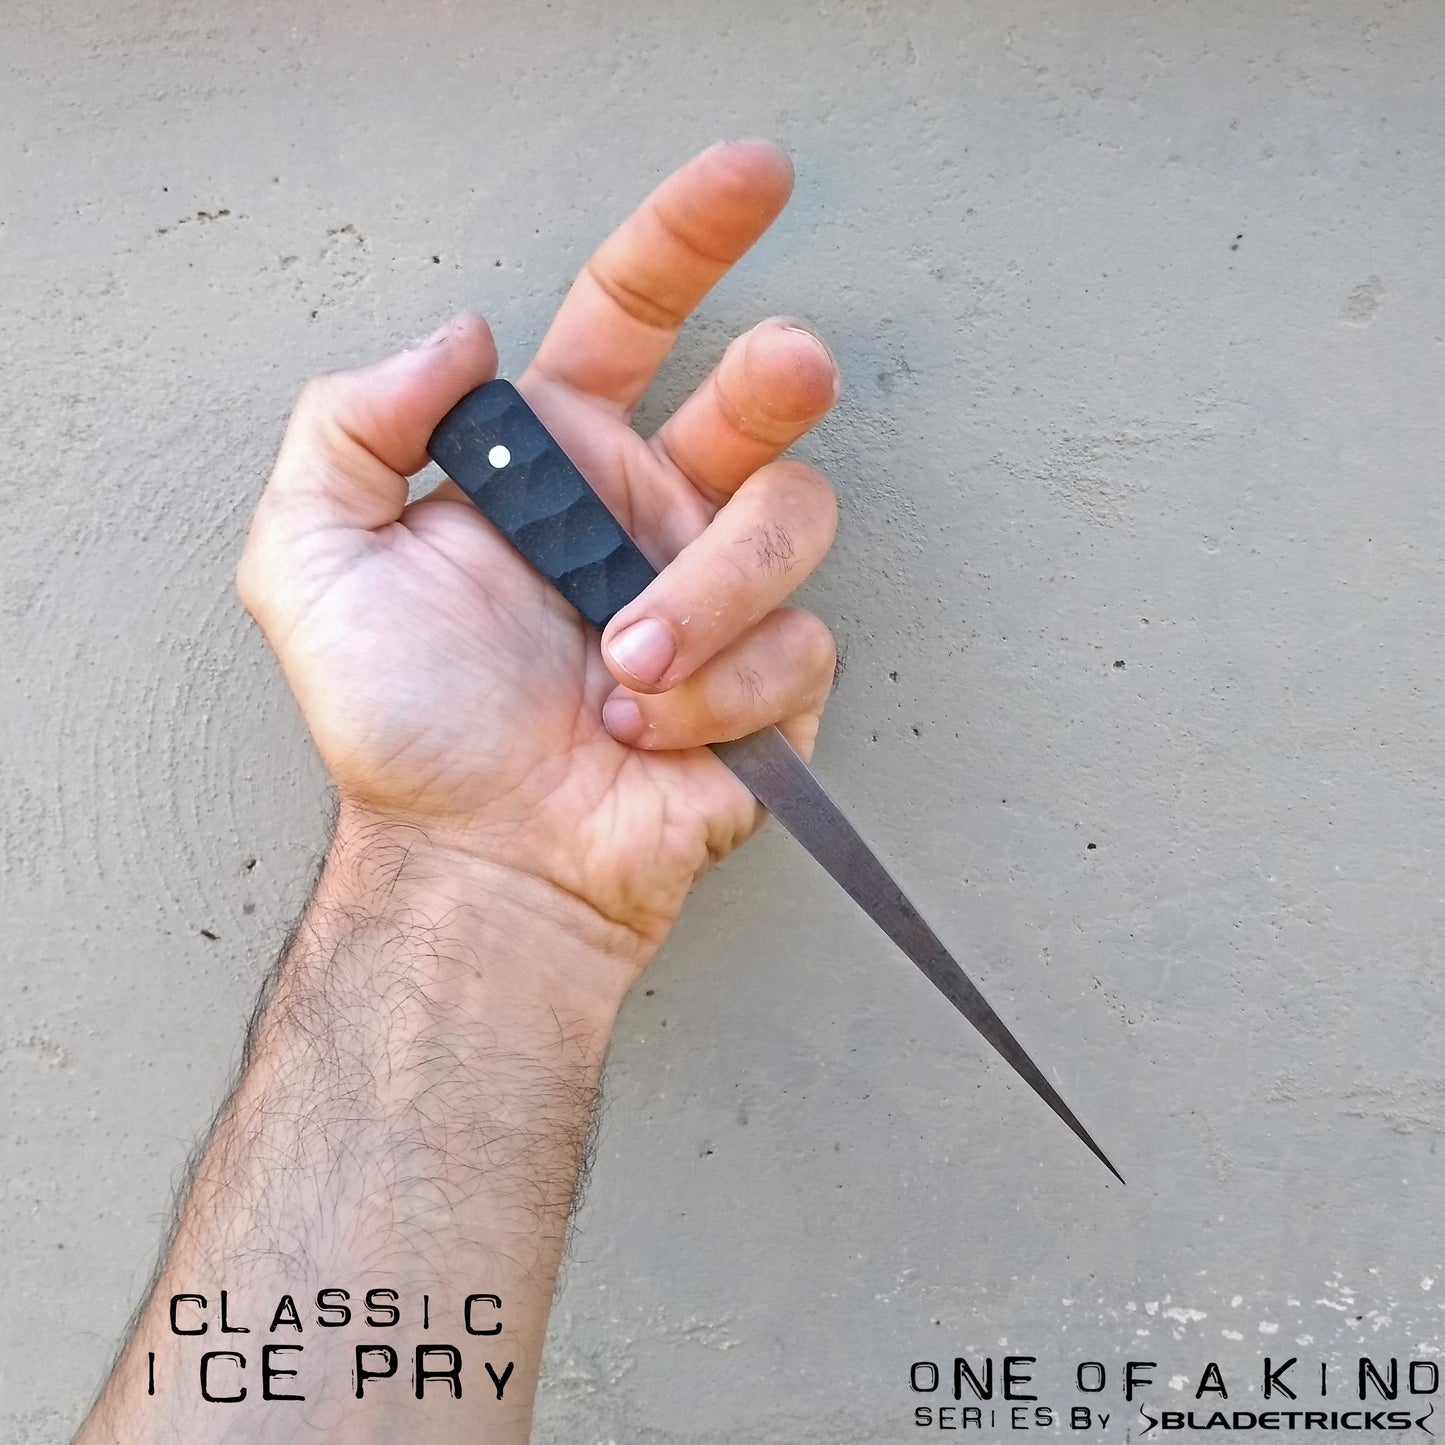 Bladetricks custom Ice Pry  dagger black G10 handle knife maker Nash